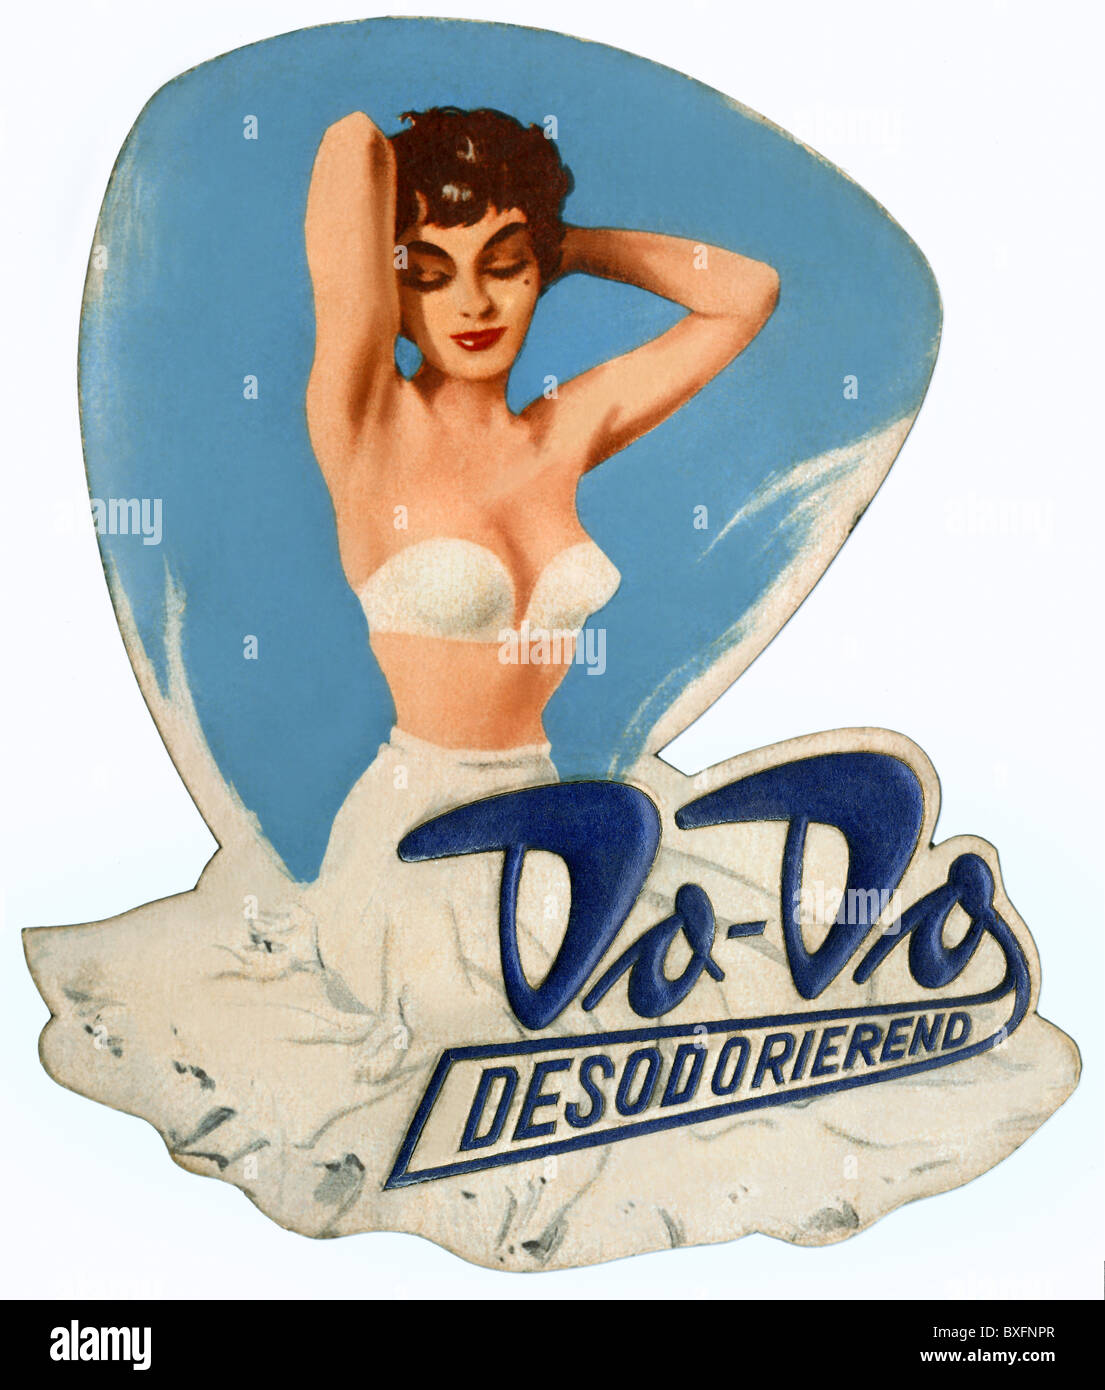 Publicité, cosmétiques, déodorant do-do, desodorierend, Allemagne, vers 1952, droits additionnels-Clearences-non disponible Banque D'Images